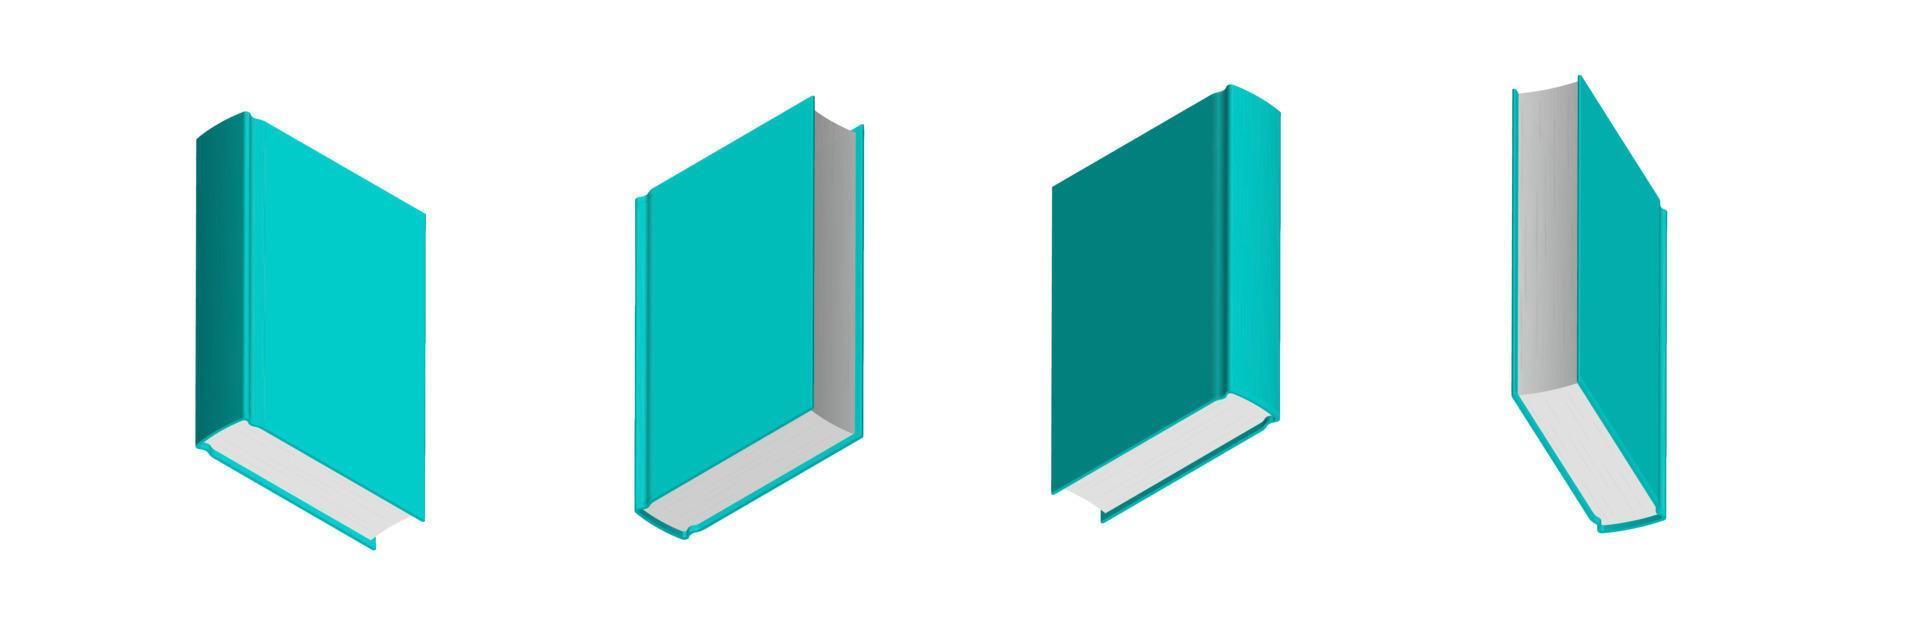 conjunto de libros mentolados verdes cerrados en diferentes posiciones para librería vector